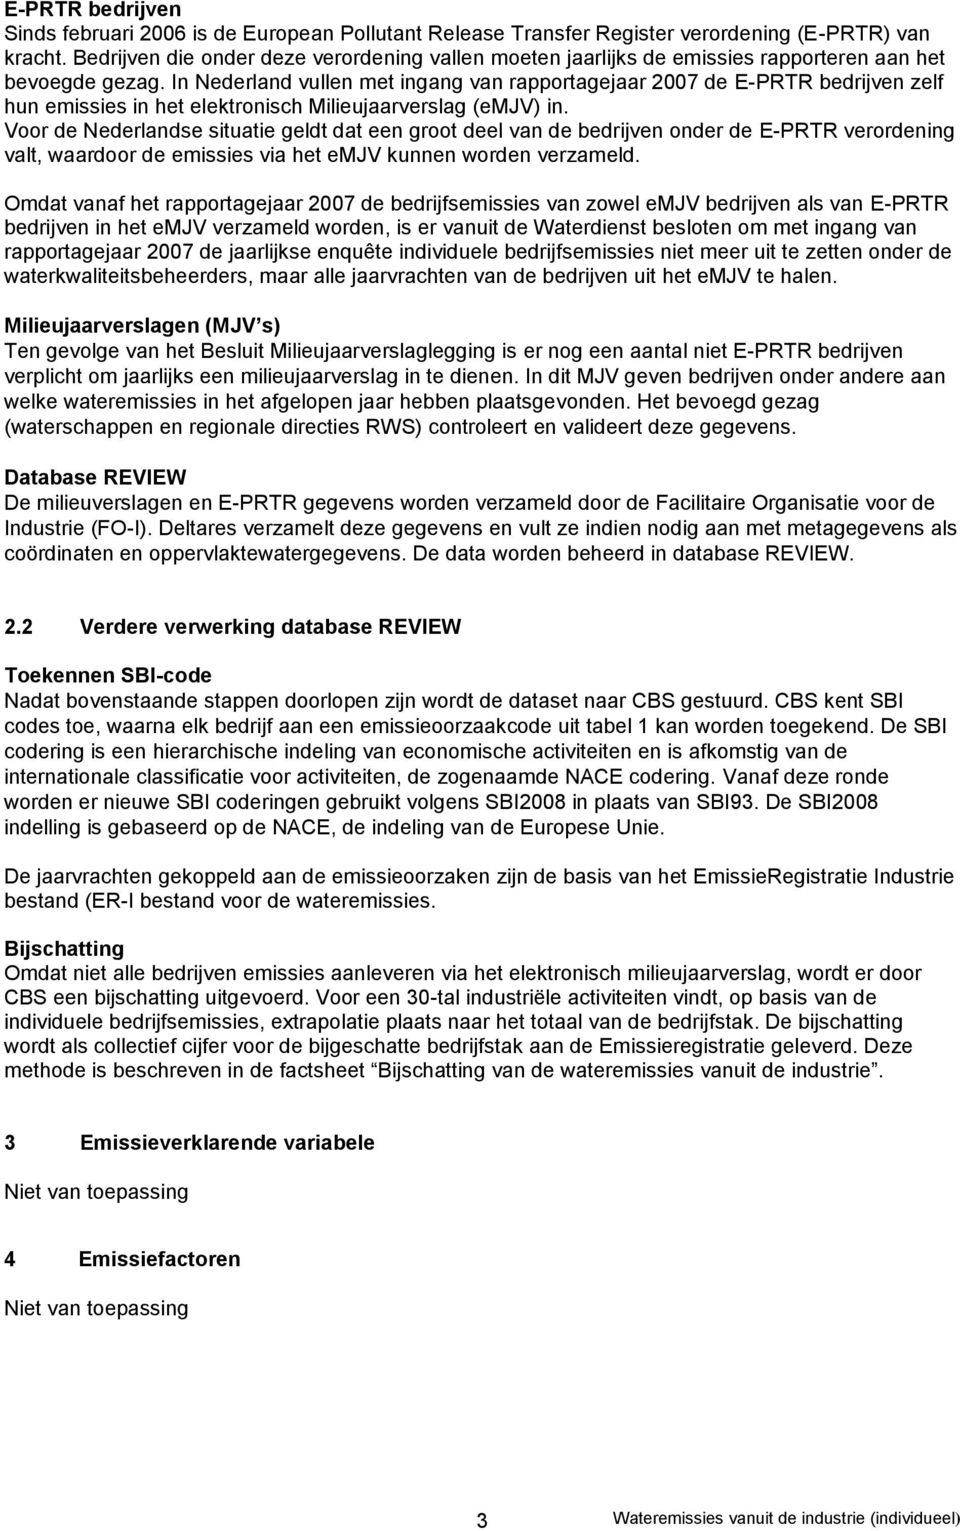 In Nederland vullen met ingang van rapportagejaar 2007 de E-PRTR bedrijven zelf hun emissies in het elektronisch Milieujaarverslag (emjv) in.